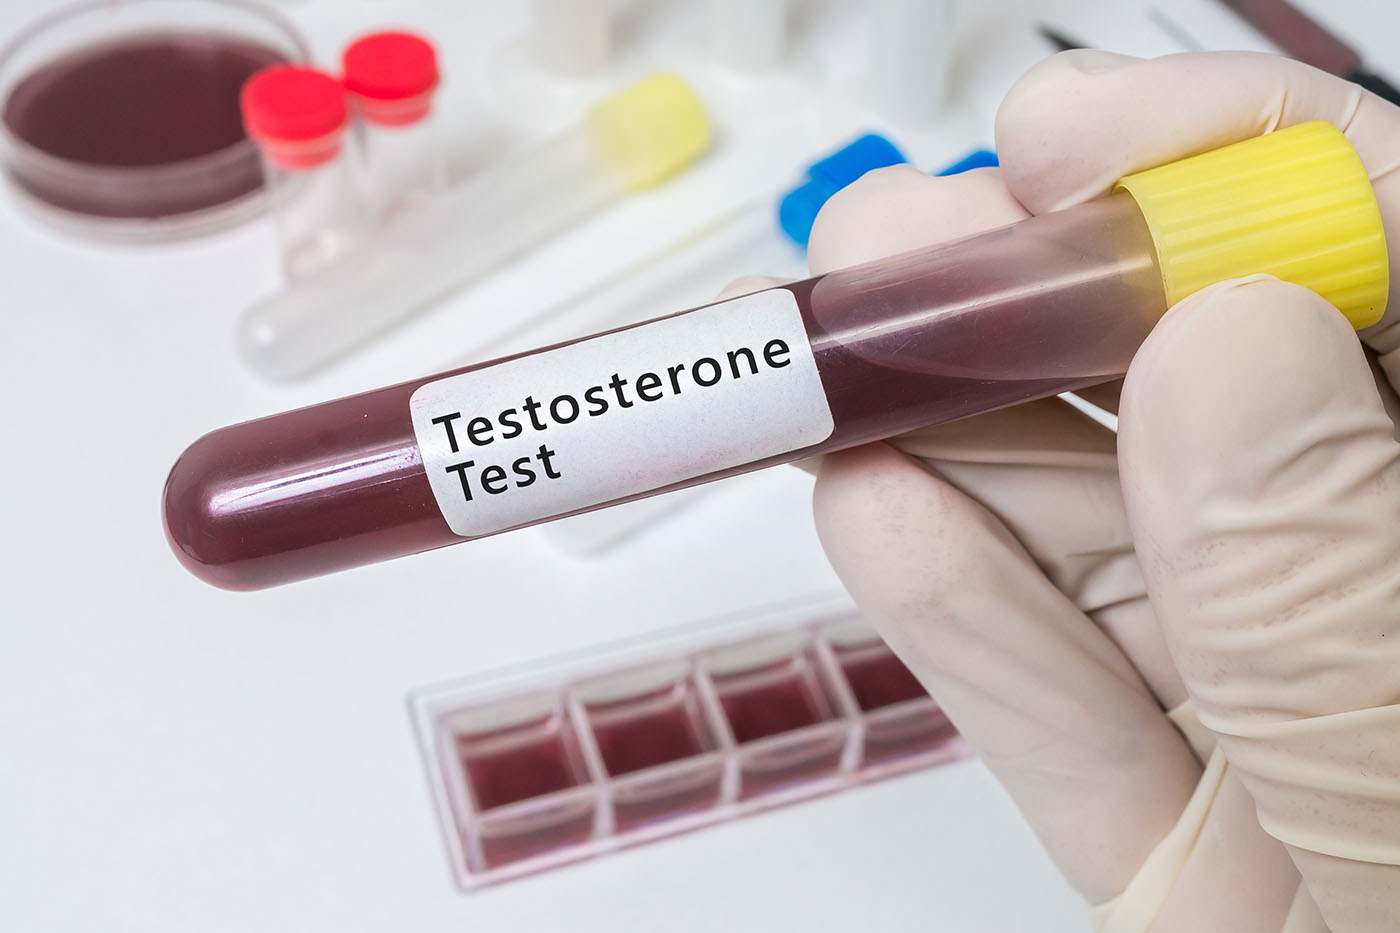 Terapia cu testosteron scade rata infarctului pentru bărbații cu niveluri scăzute ale acestui hormon (studiu)